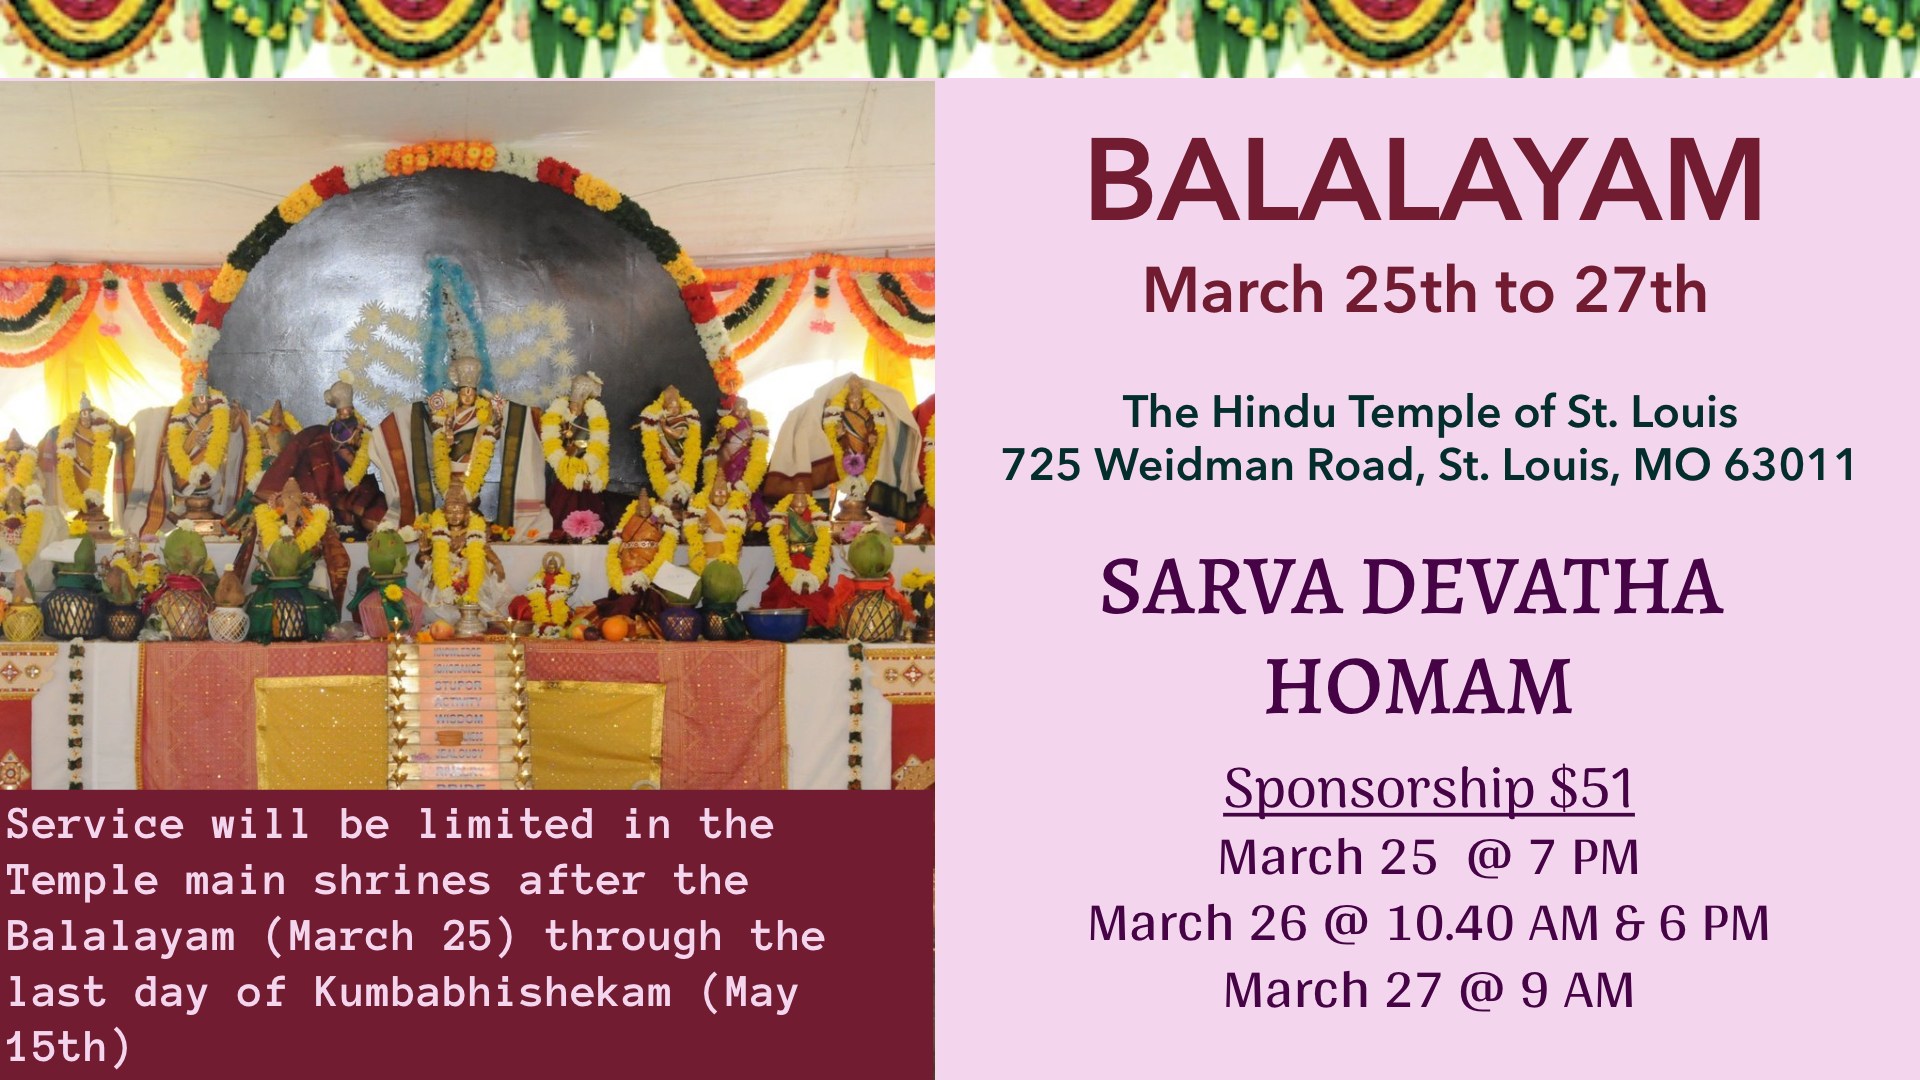 Balalayam – Sarva Devatha Homam